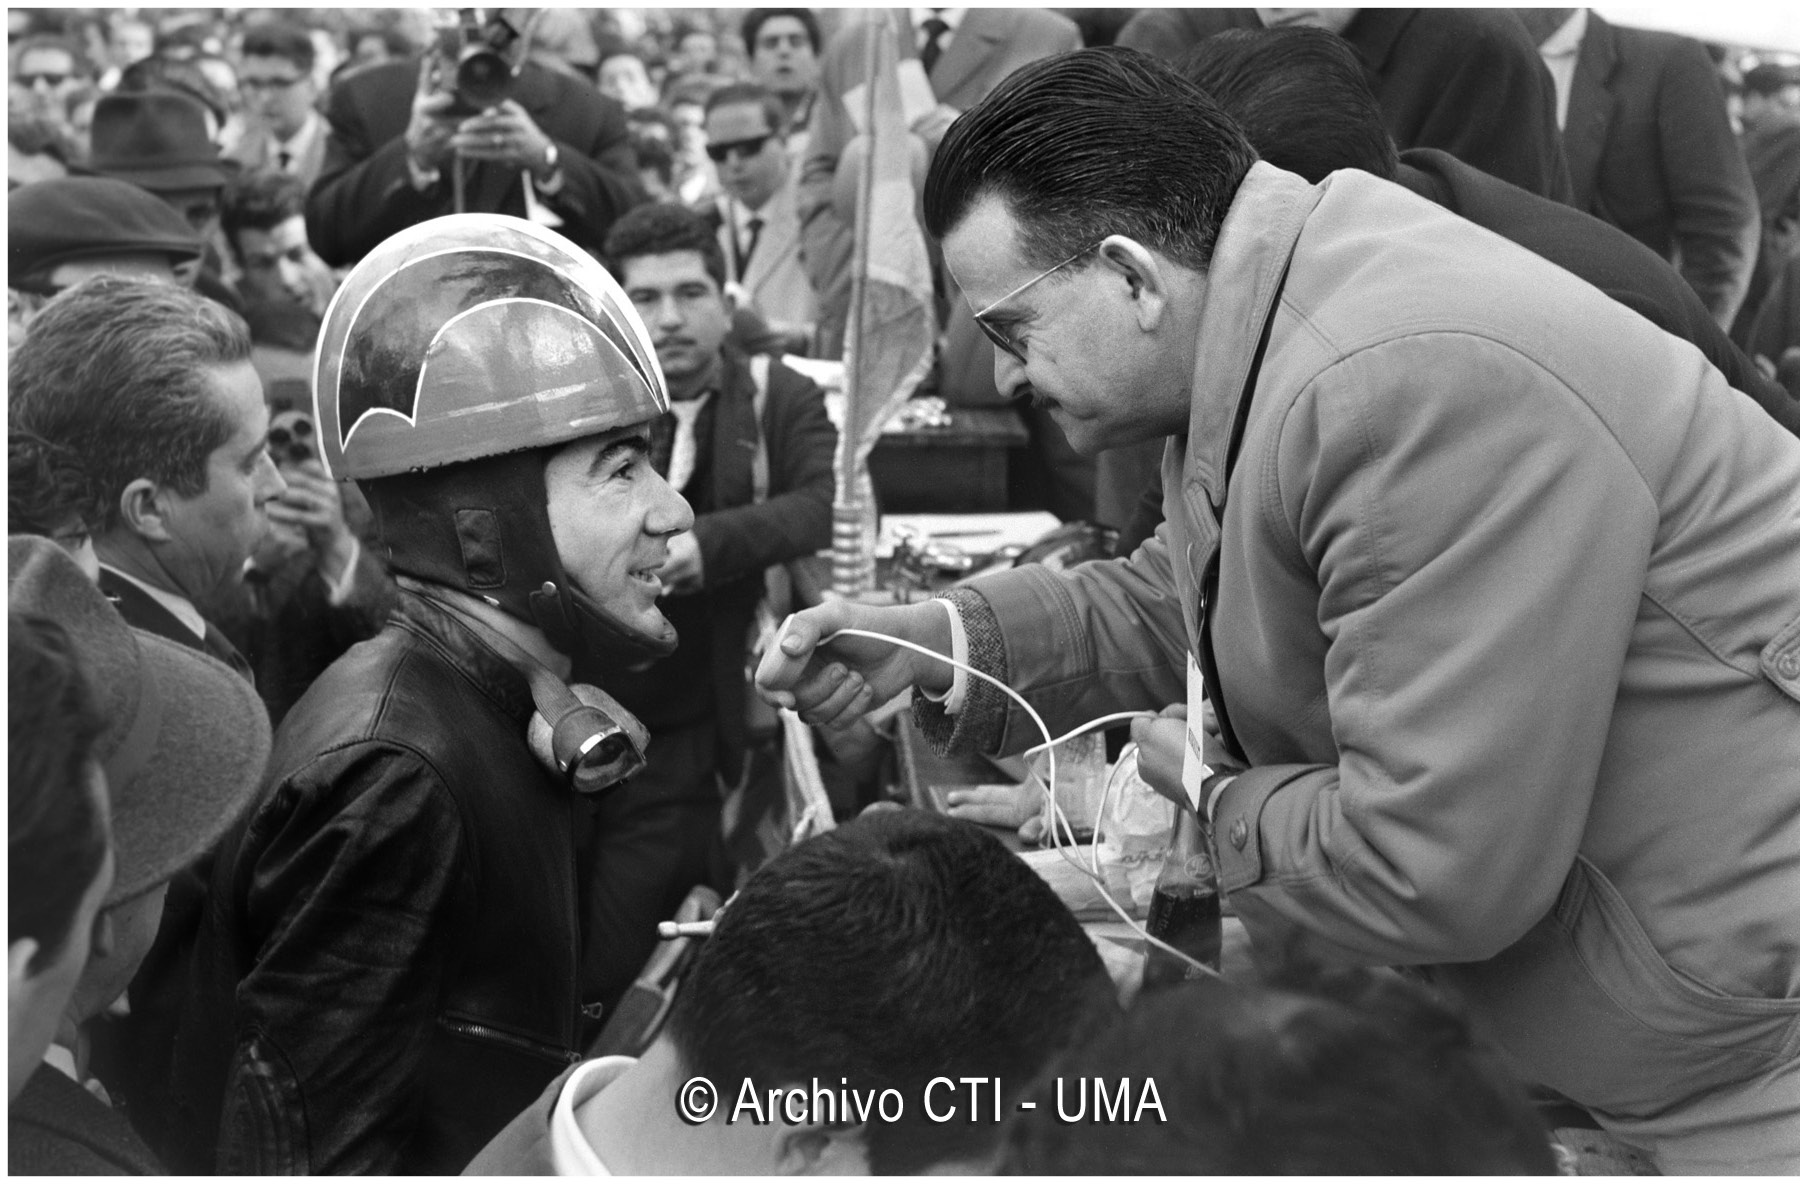 José Medrano, ganador de 350 cc en el II Premio Internacional Costa del Sol y XIV Gran Premio Motociclista de Invierno de Málaga. Febrero, 1963.